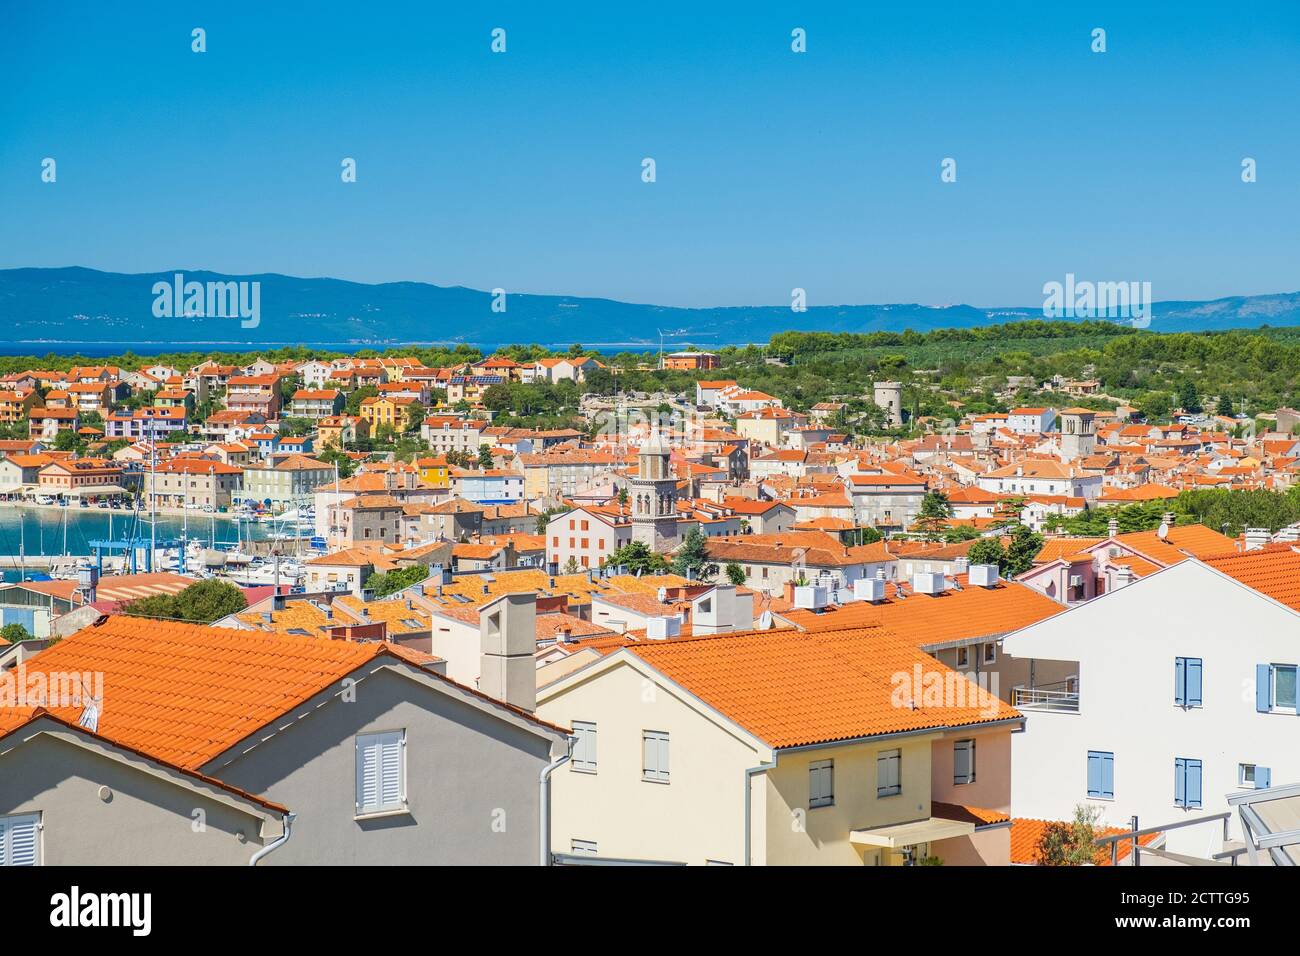 Vue panoramique de la ville de Cres sur l'île de Cres en Croatie, magnifique paysage Adriatique Banque D'Images